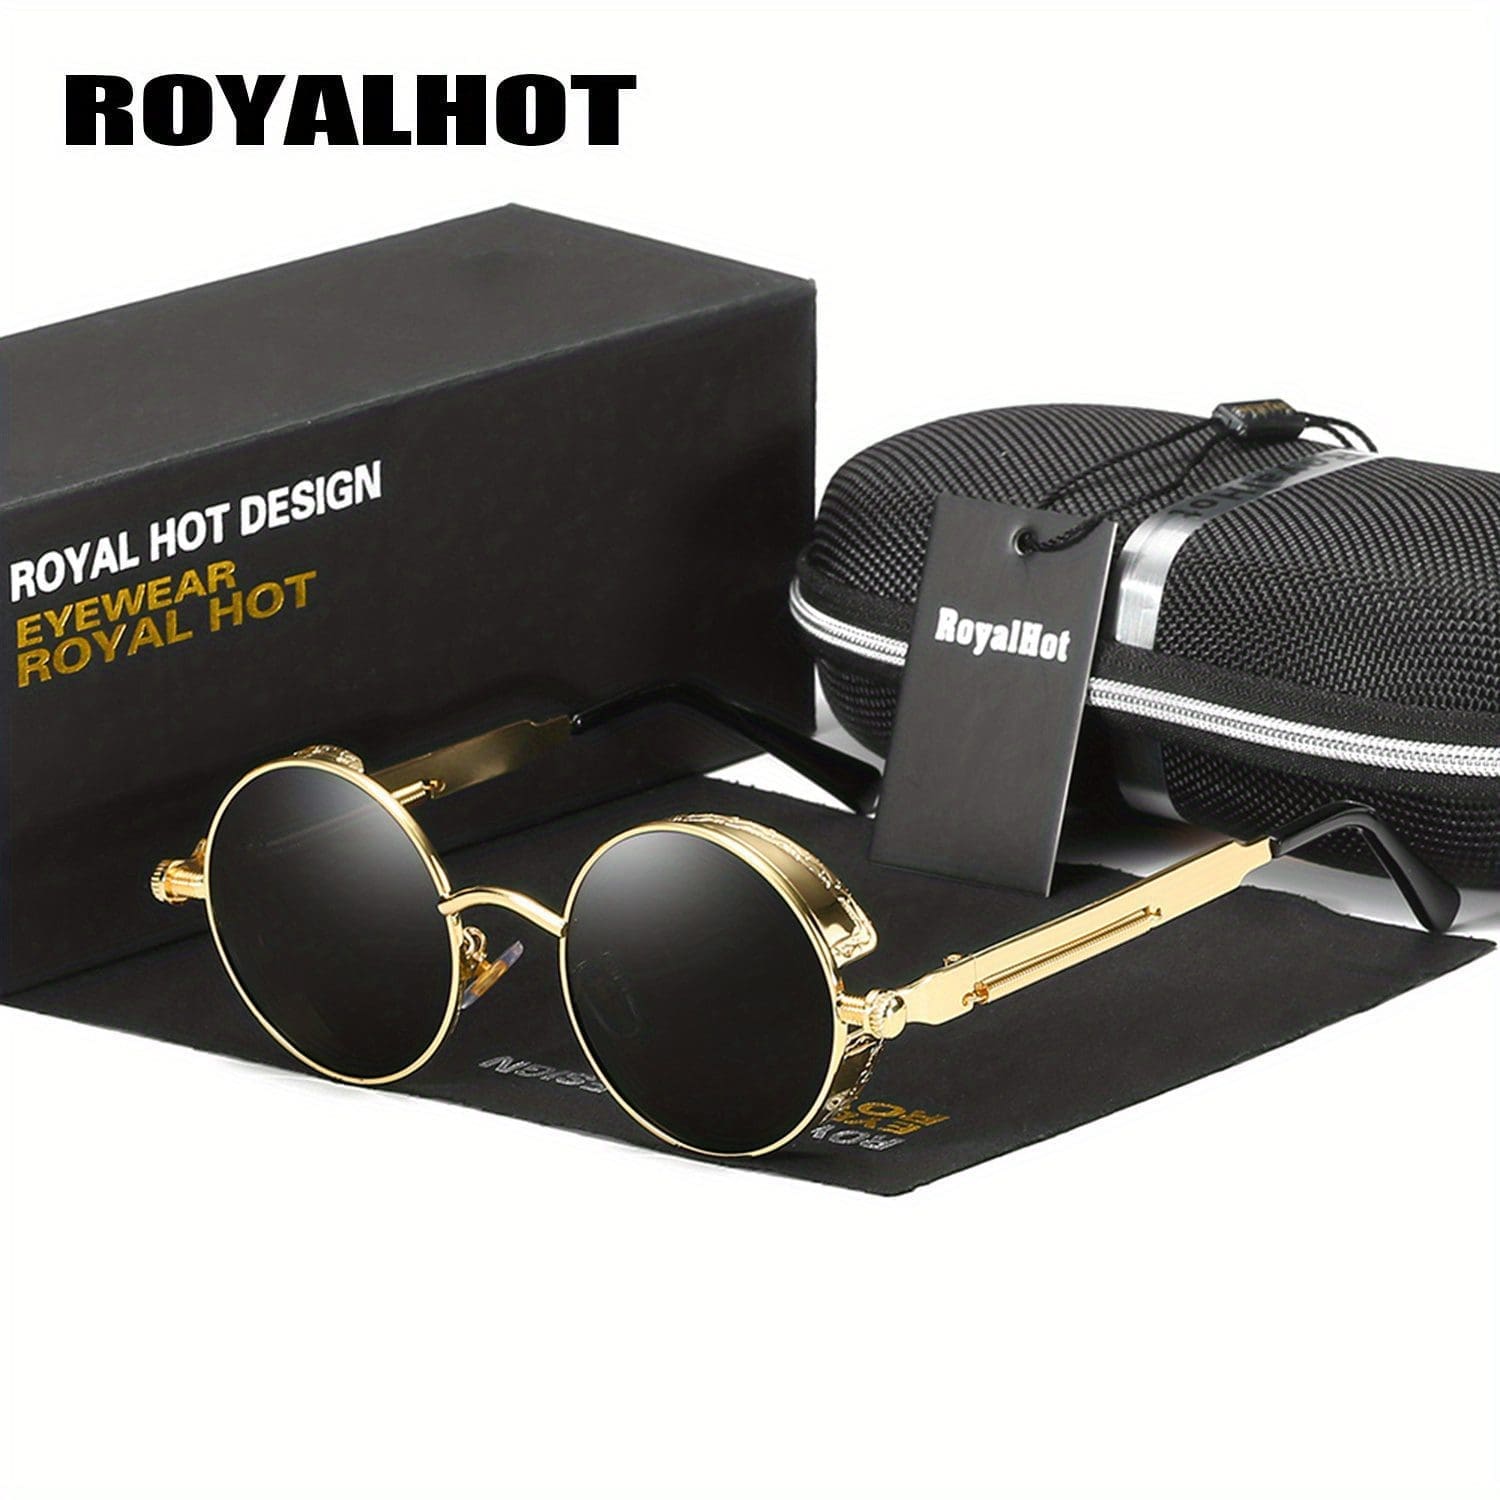 Top Six Best RoyalHot Sunglasses 2